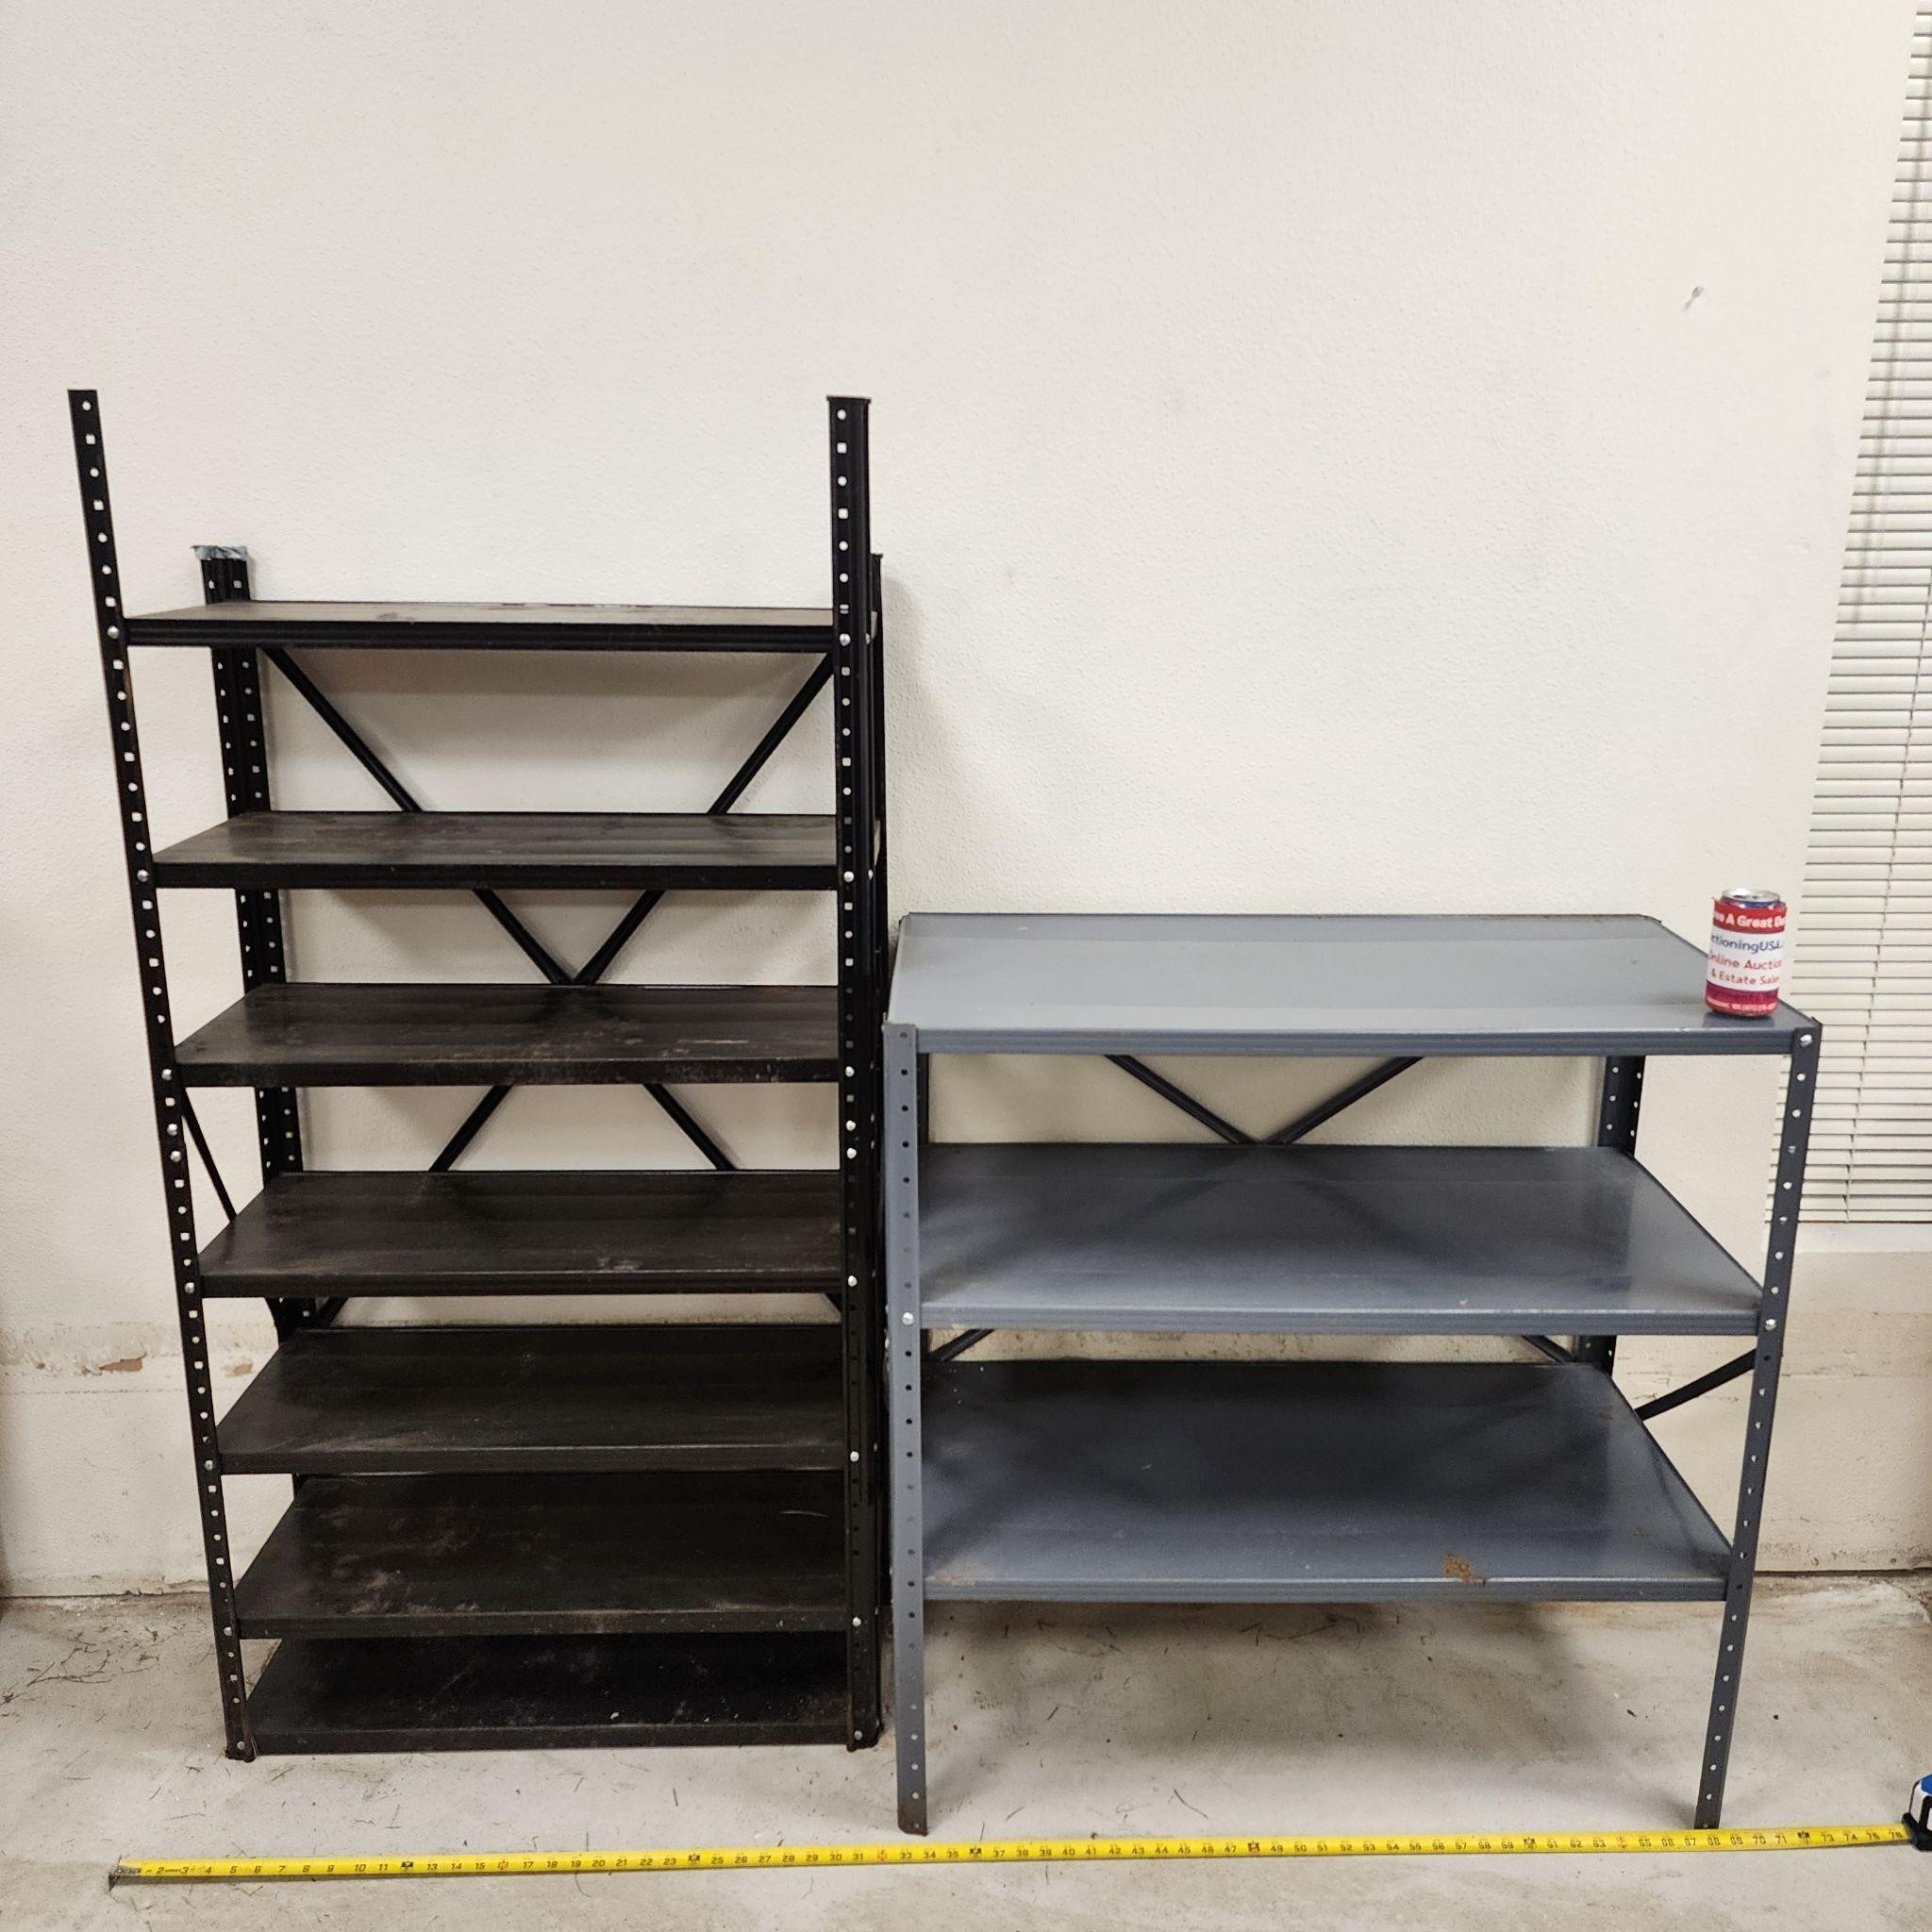 2 Metal Garage Shelves